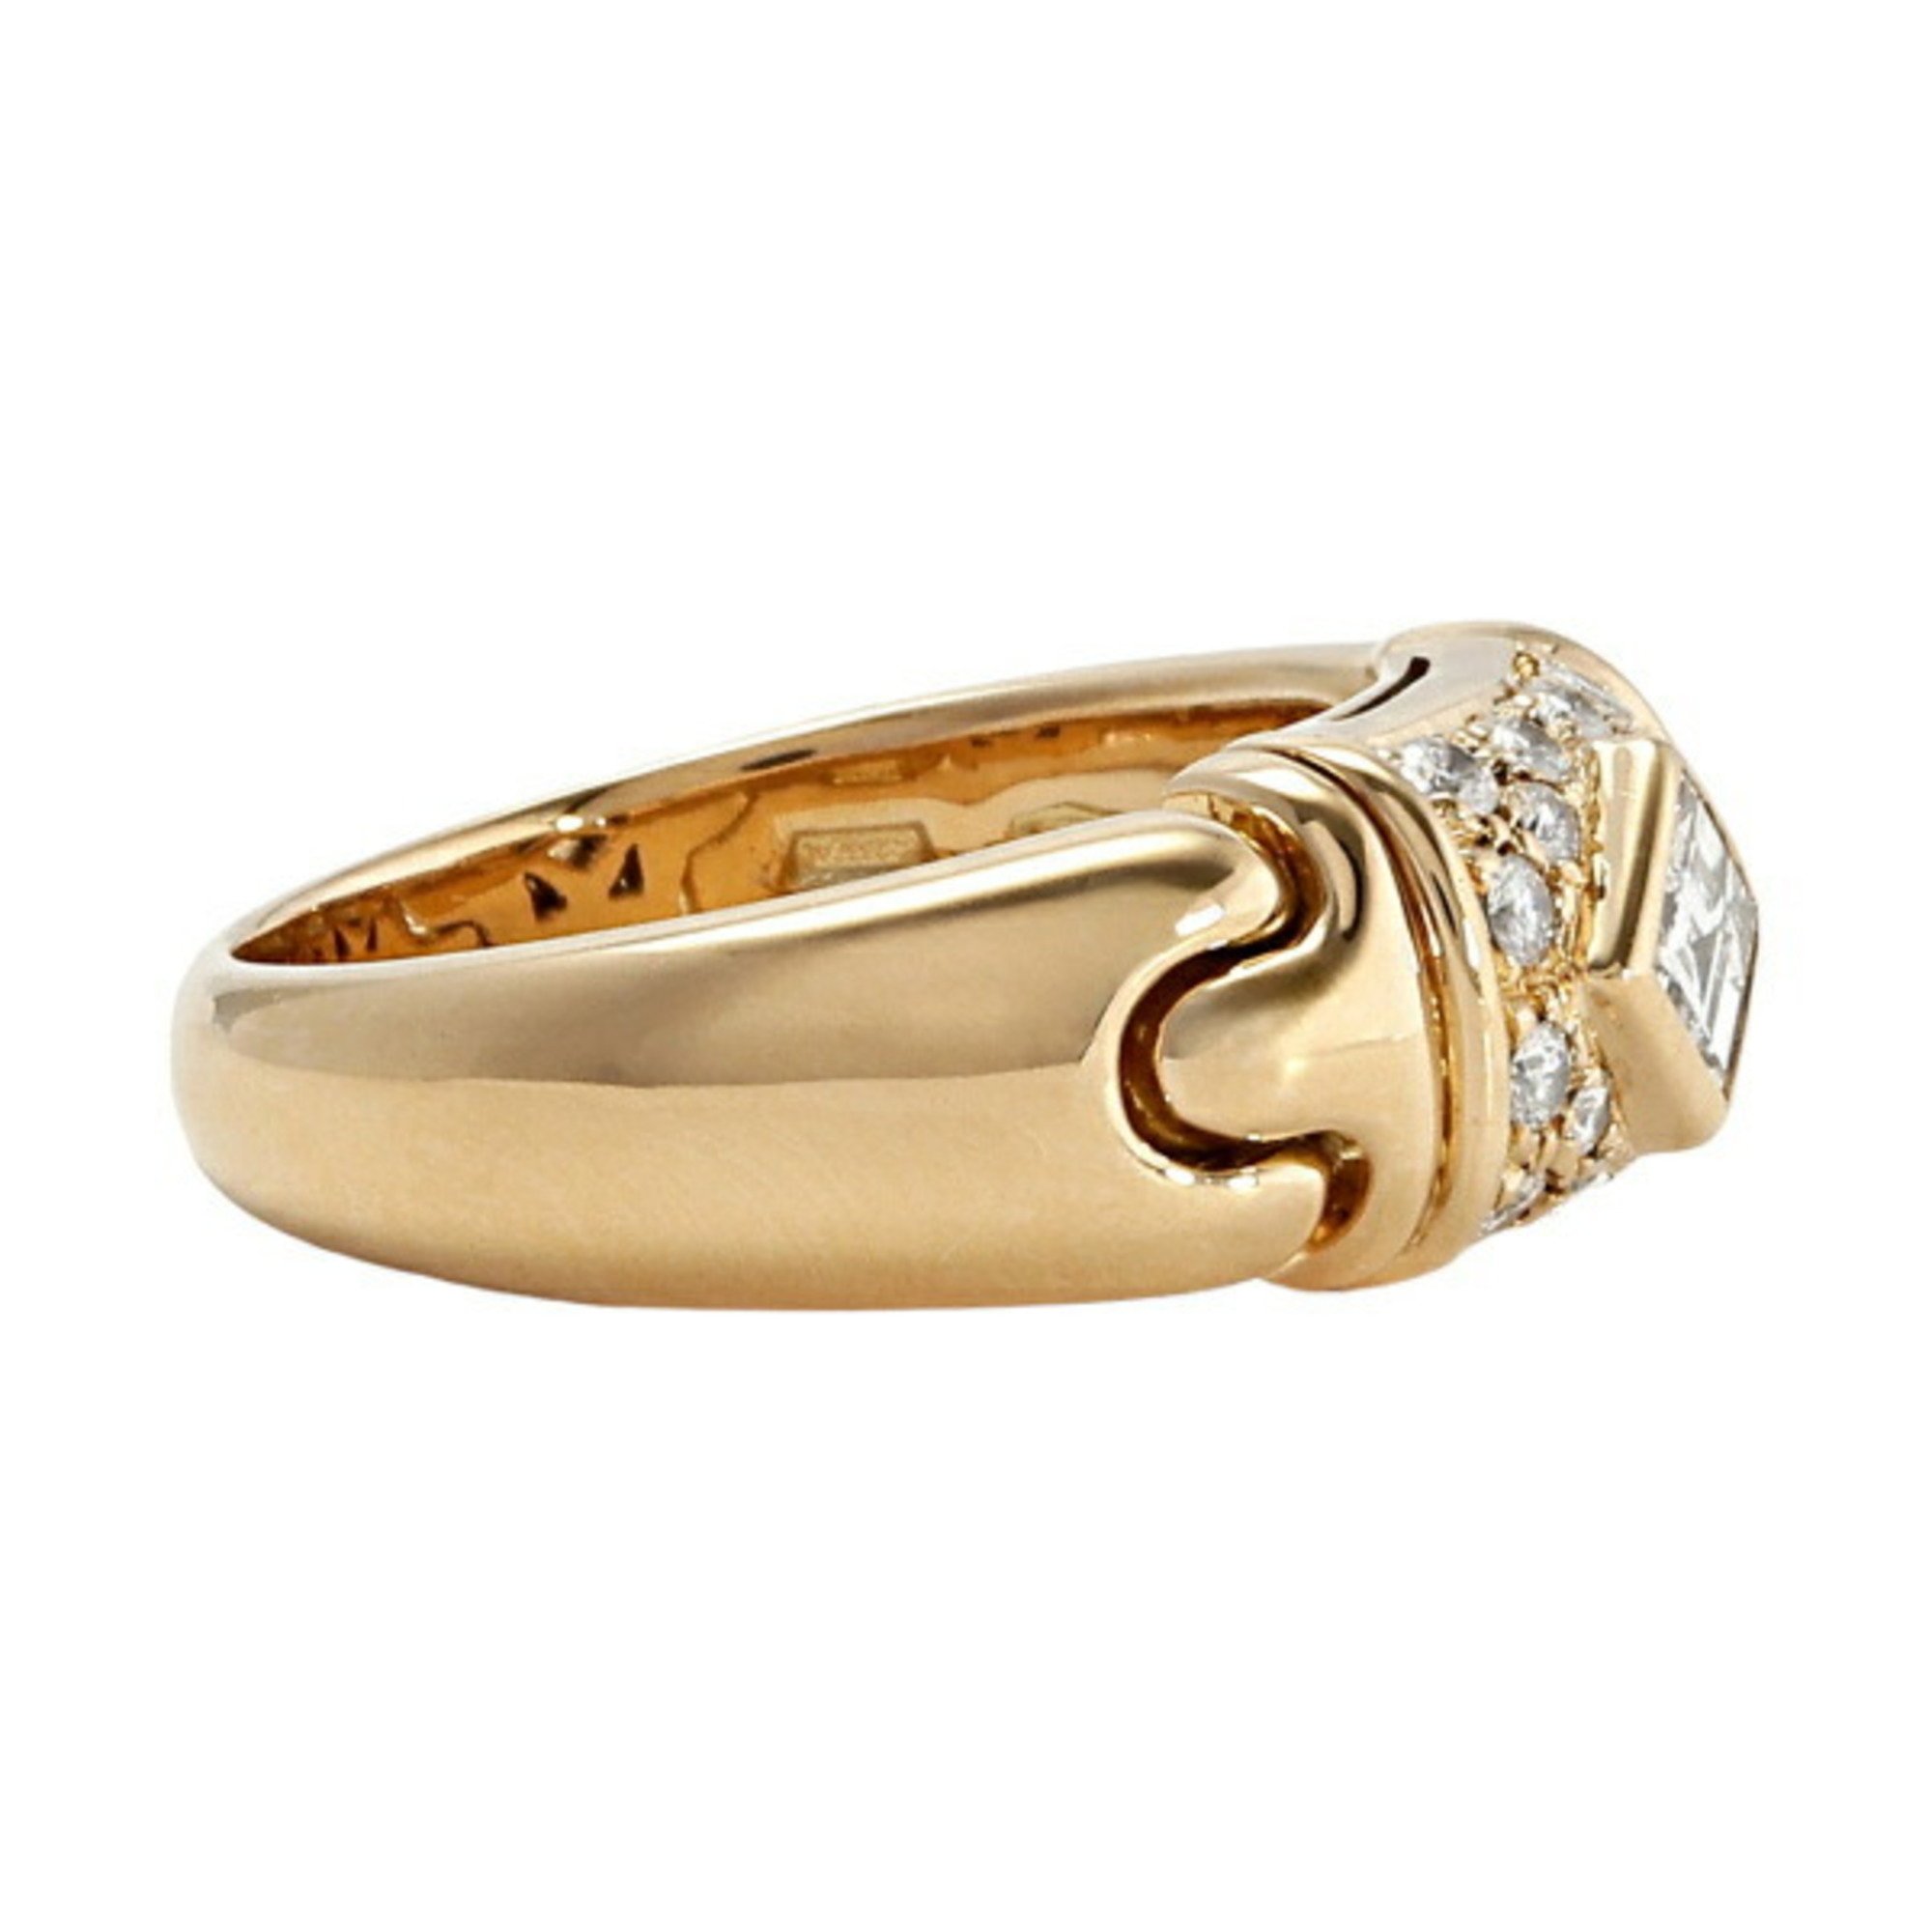 Bvlgari Certica 18K Yellow Gold Ring